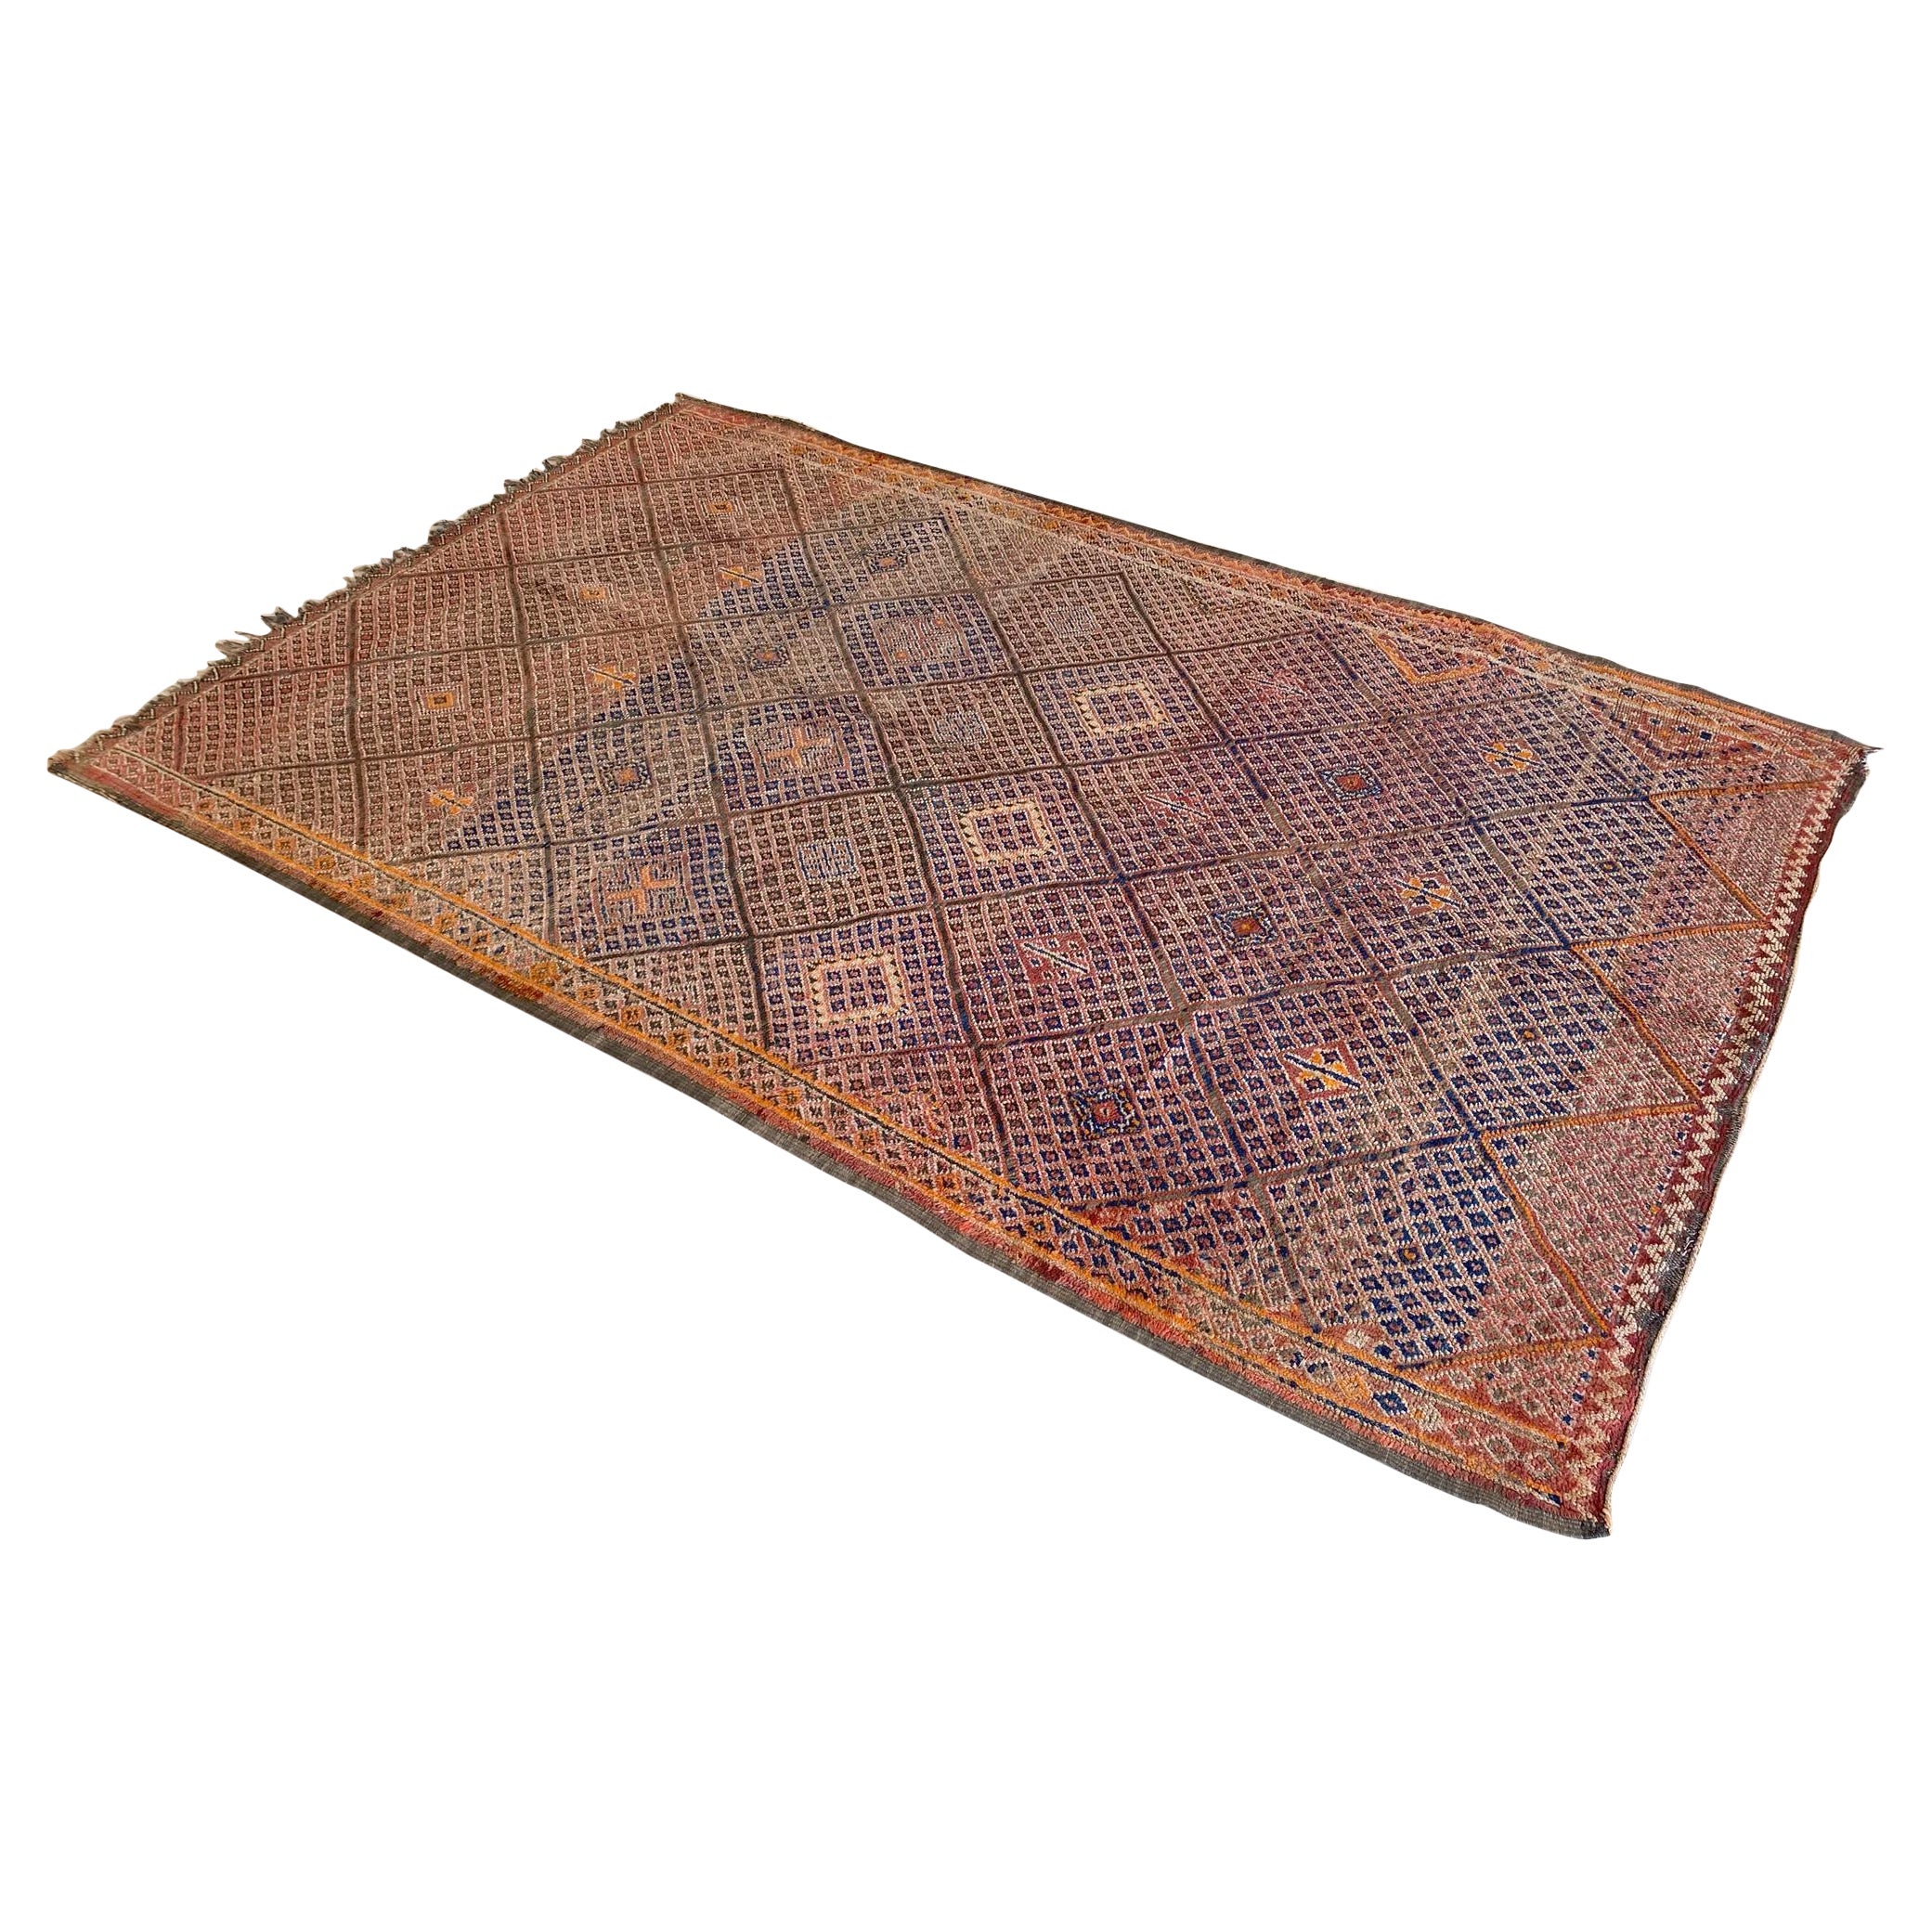 Vintage Beni Mguild rug - Orange/terracotta/blue - 6.1x9.8feet / 186x298cm For Sale